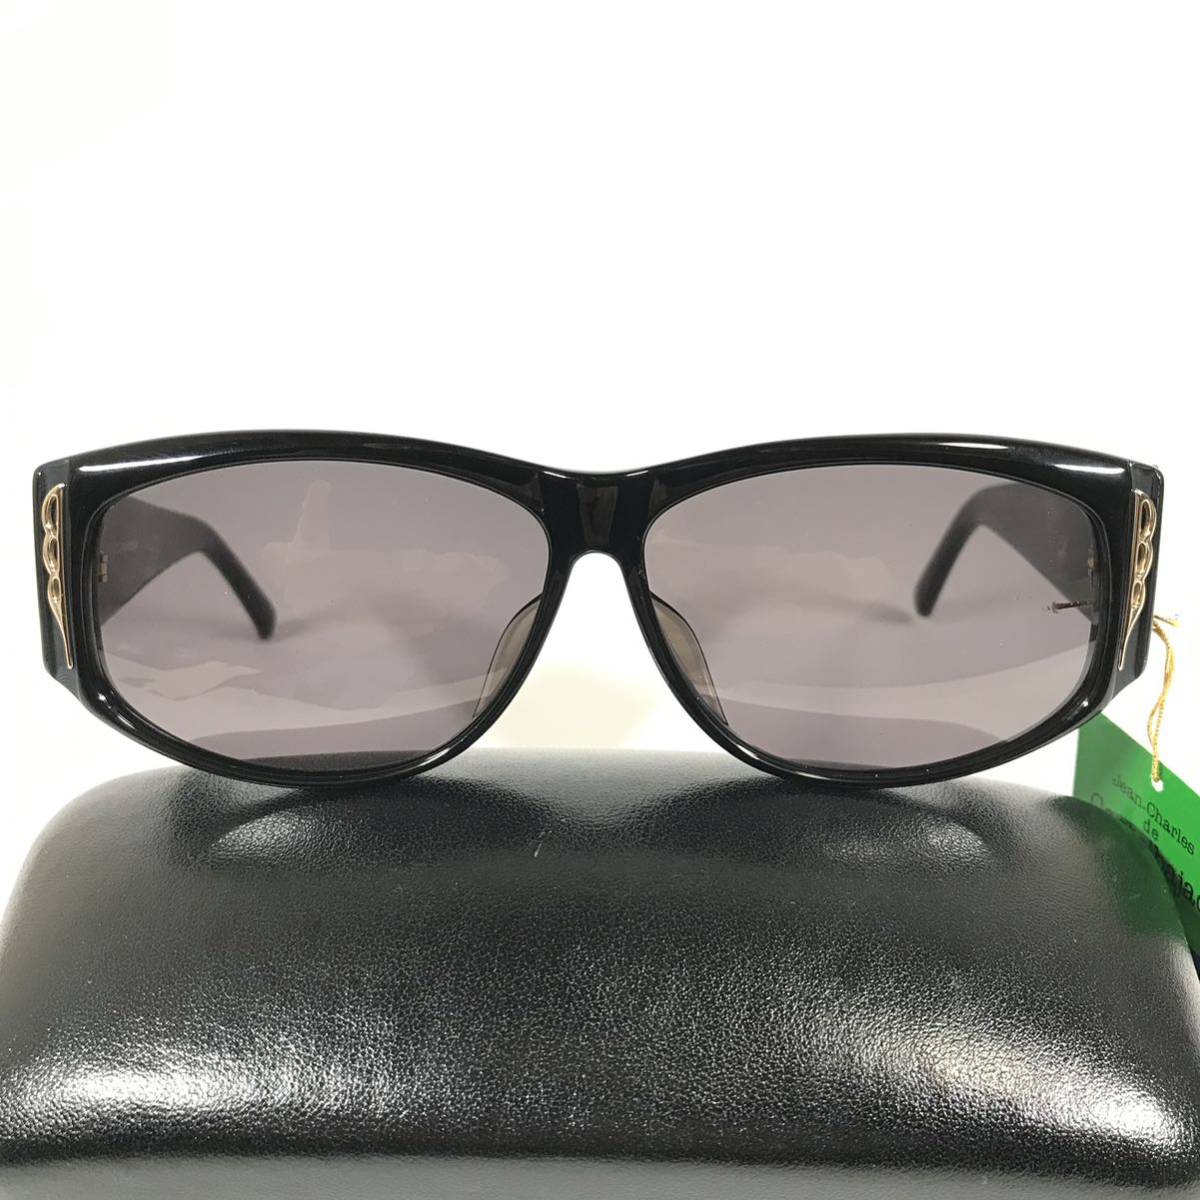  не использовался товар [ Castelbajac ] подлинный товар Castelbajac солнцезащитные очки JC Logo 9003 серый цвет серия × чёрный мужской женский обычная цена 2.8 десять тысяч иен стоимость доставки 520 иен 4